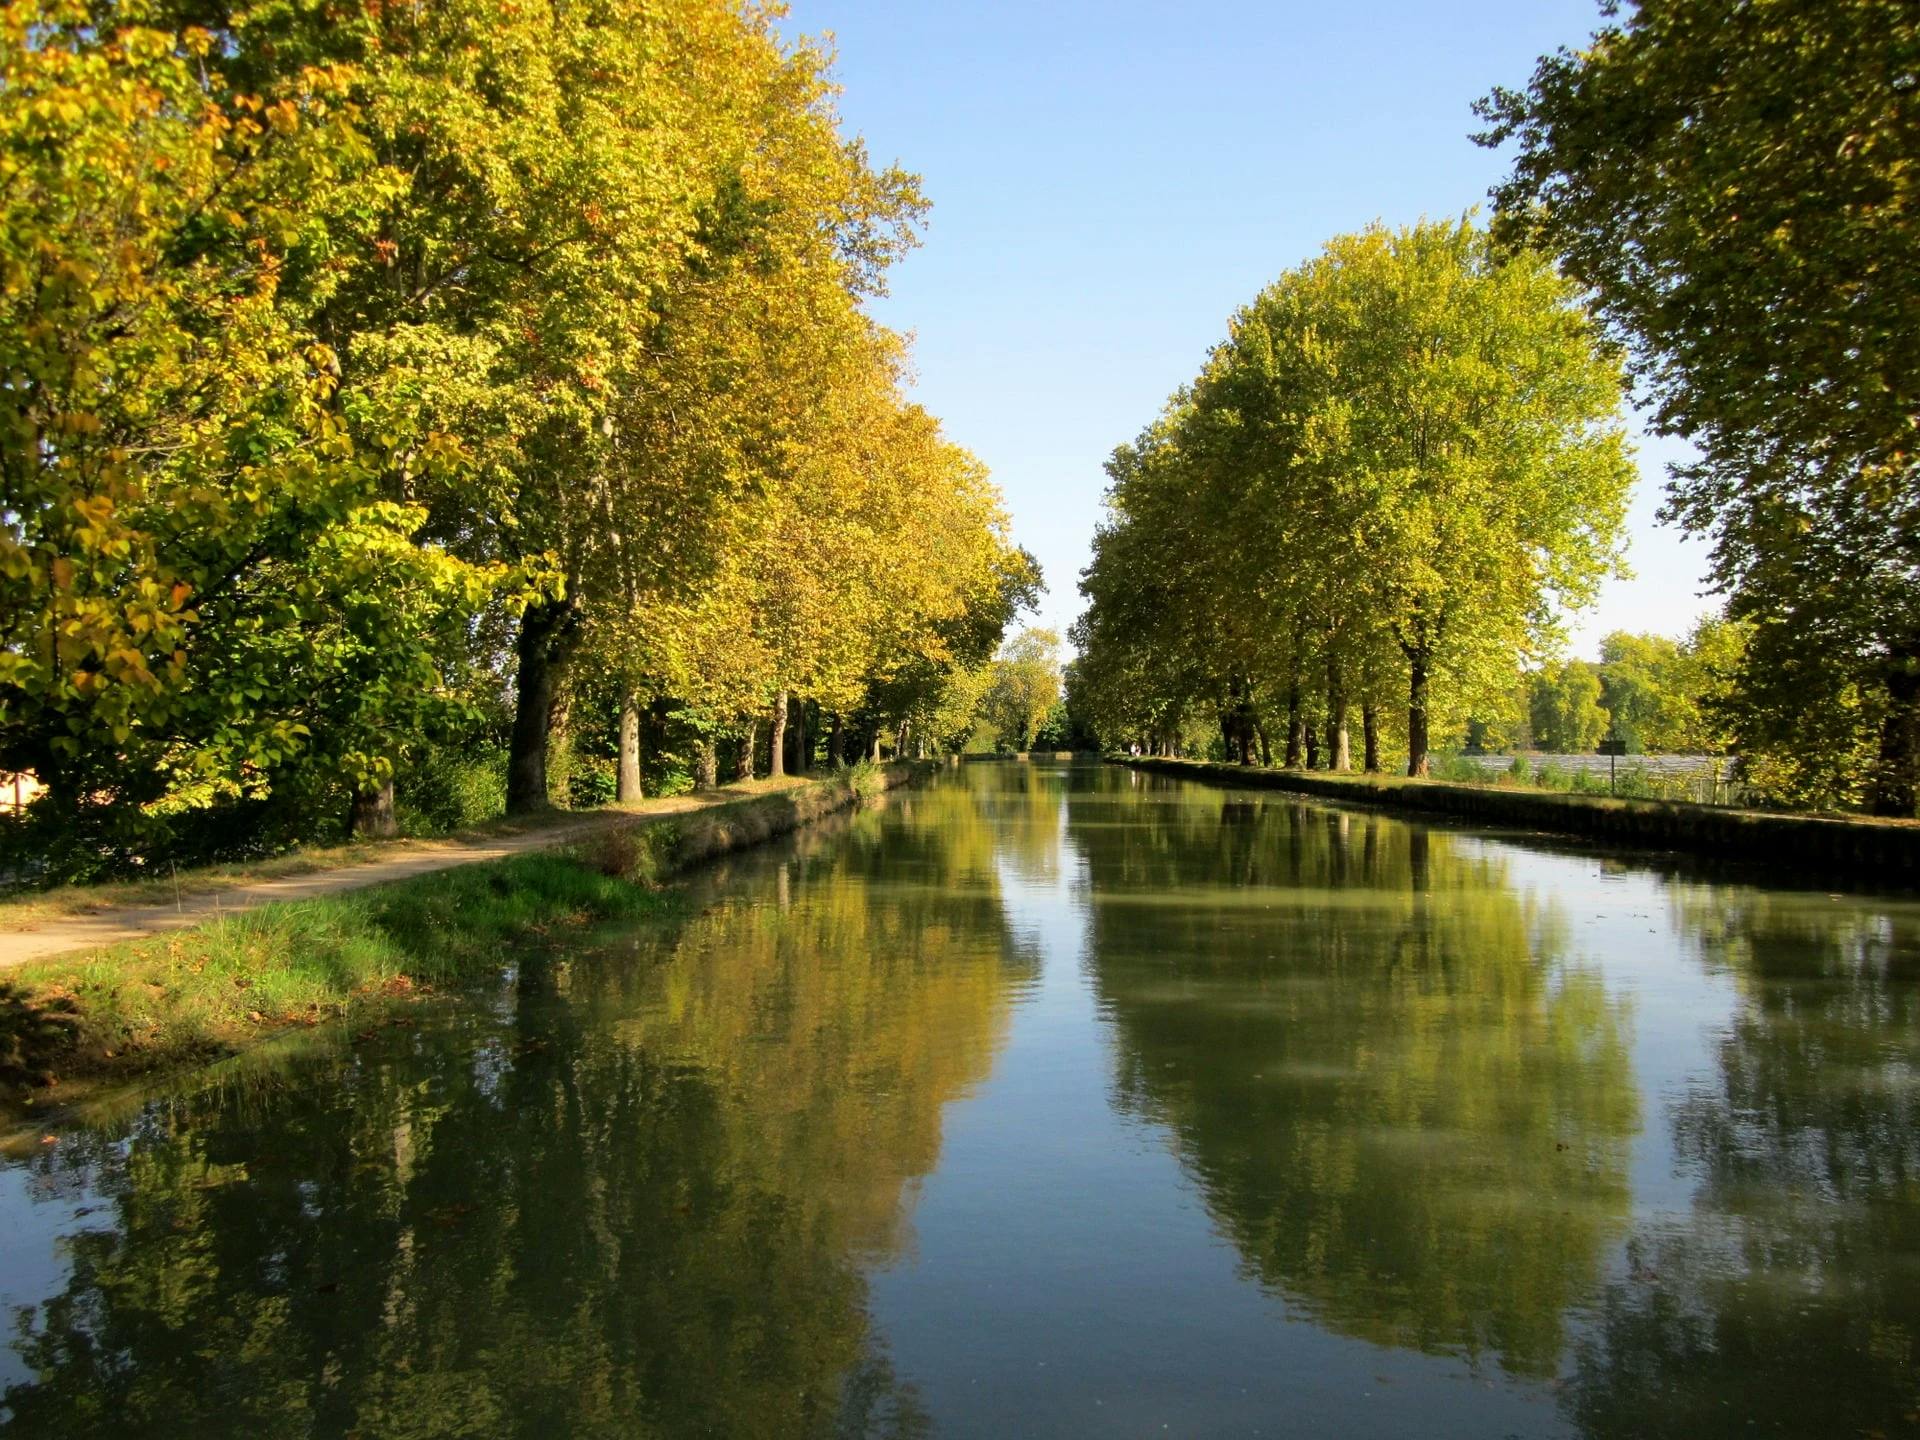 the-canal-de-la-garonne-from-bordeaux-to-toulouse